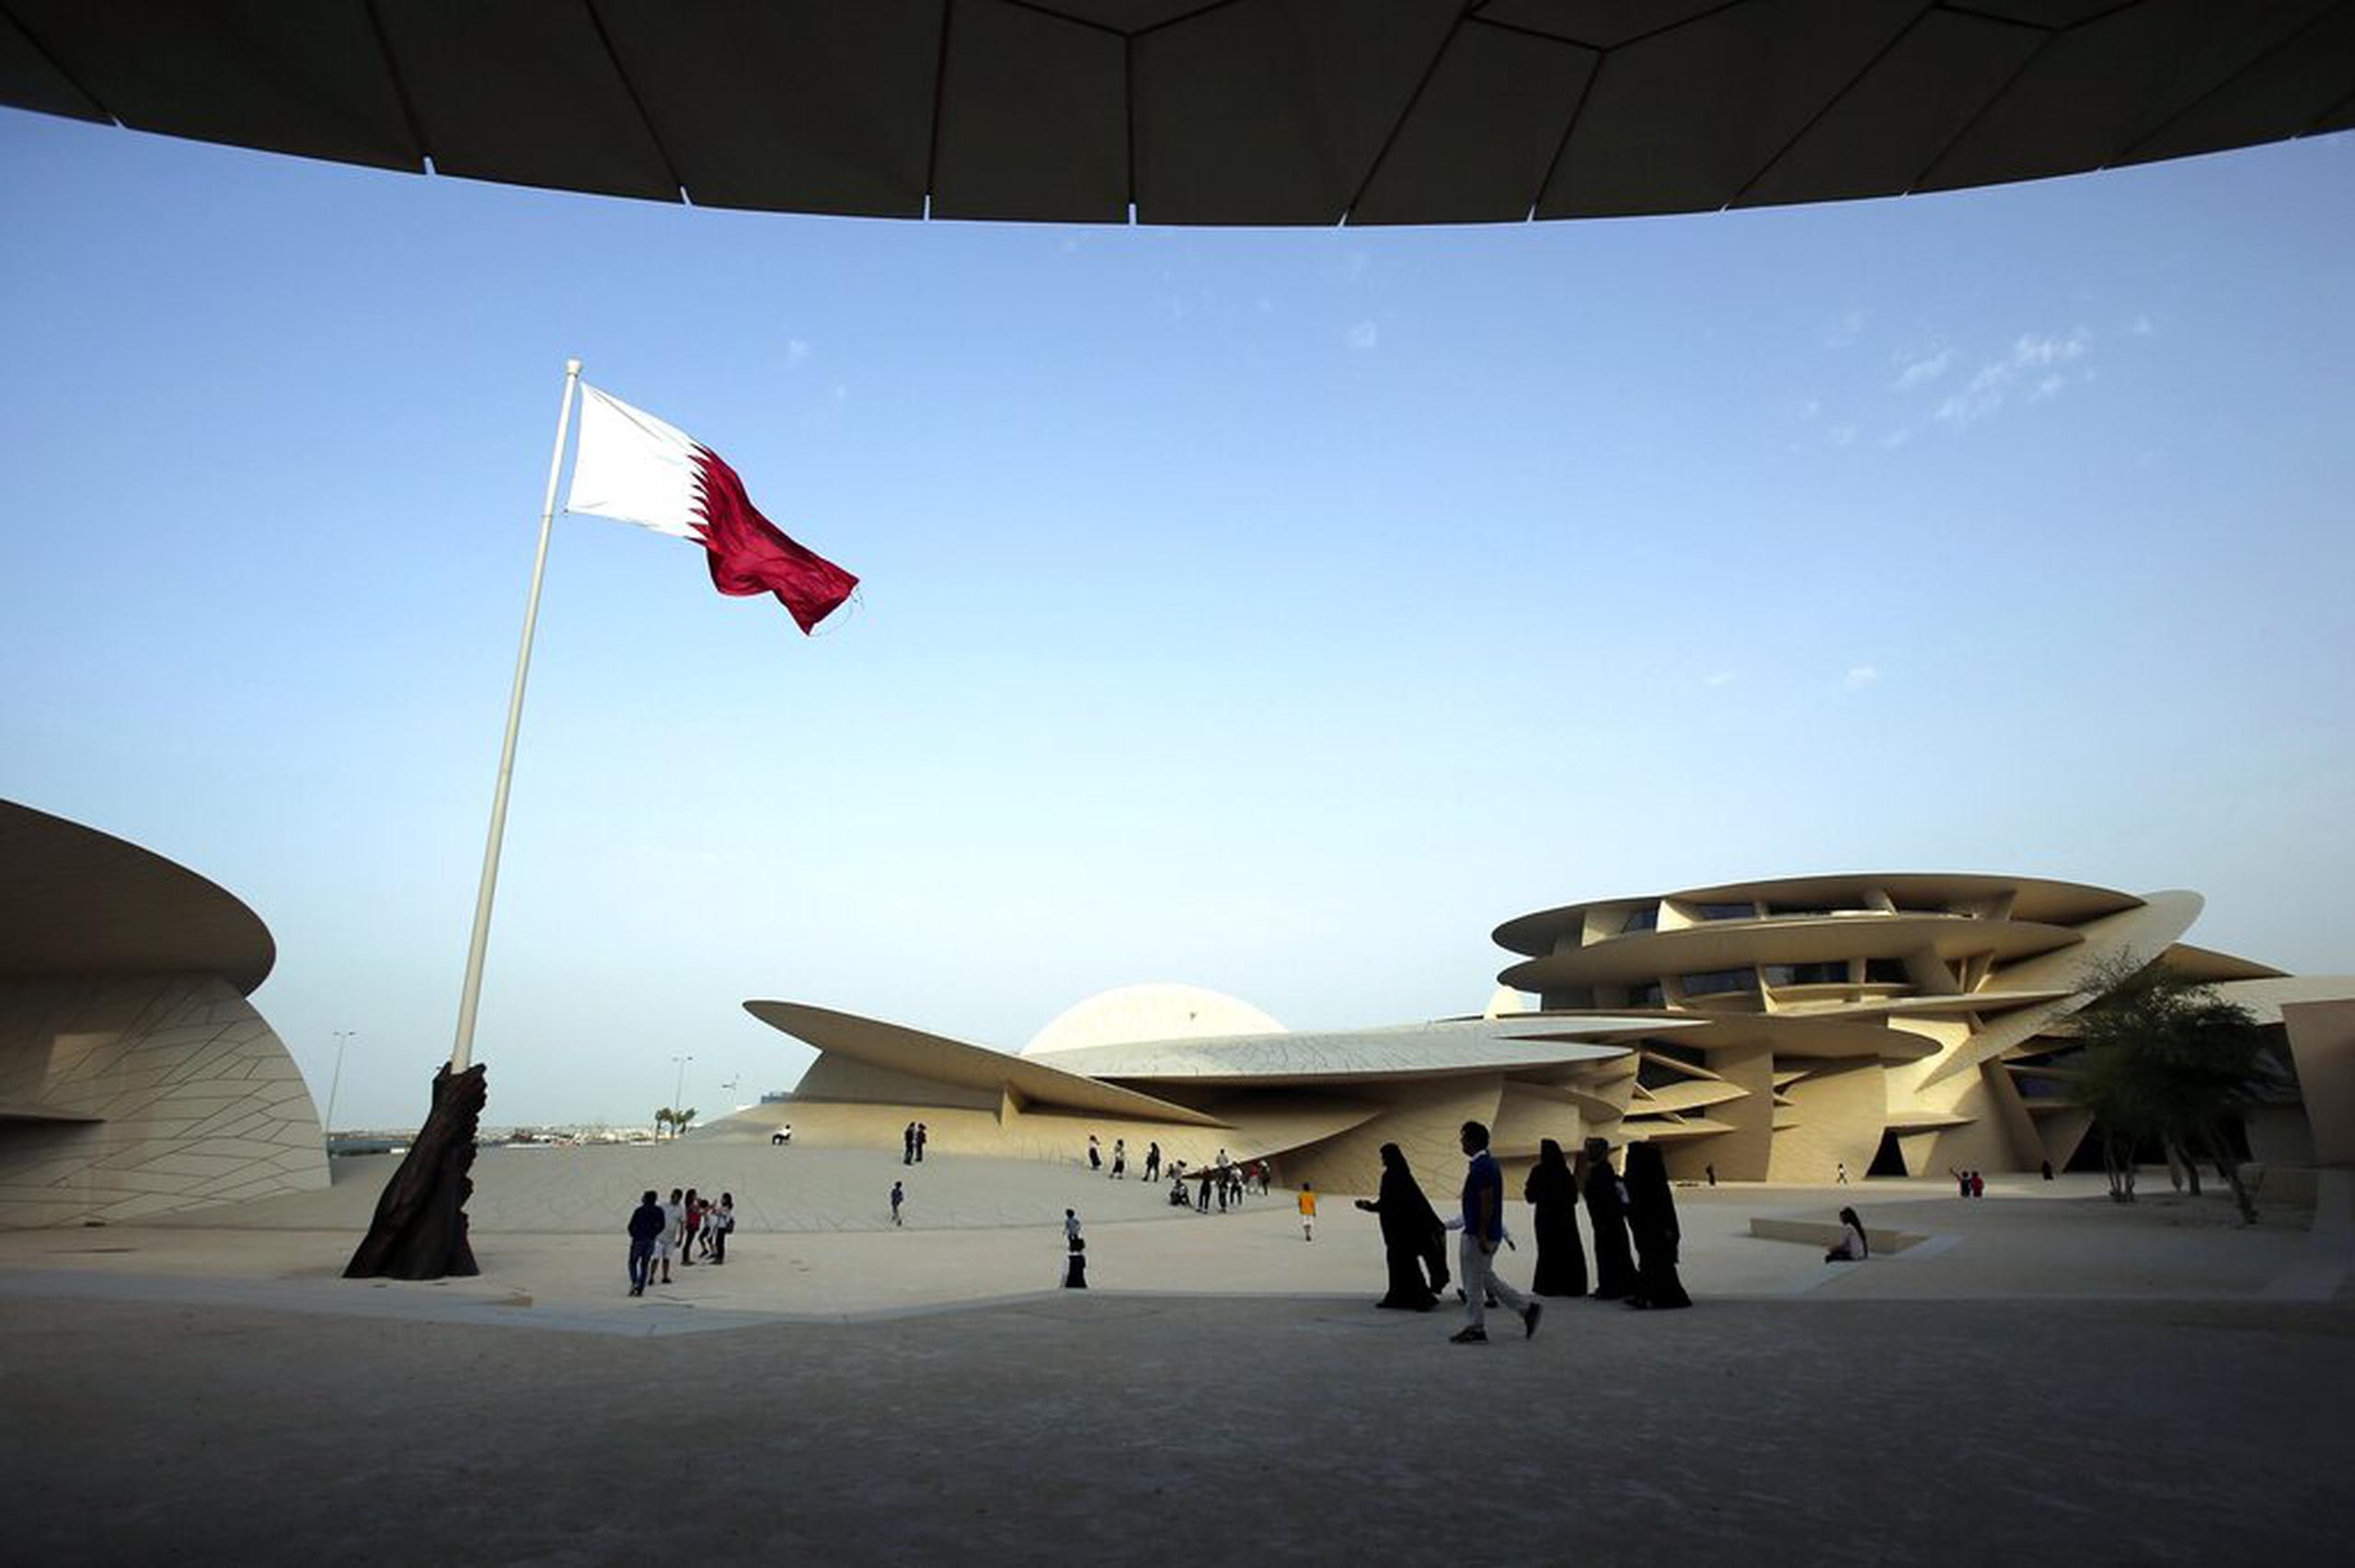 Se espera que alrededor de 1.2 millones de personas viajen a Qatar para el Mundial que comienza en noviembre.